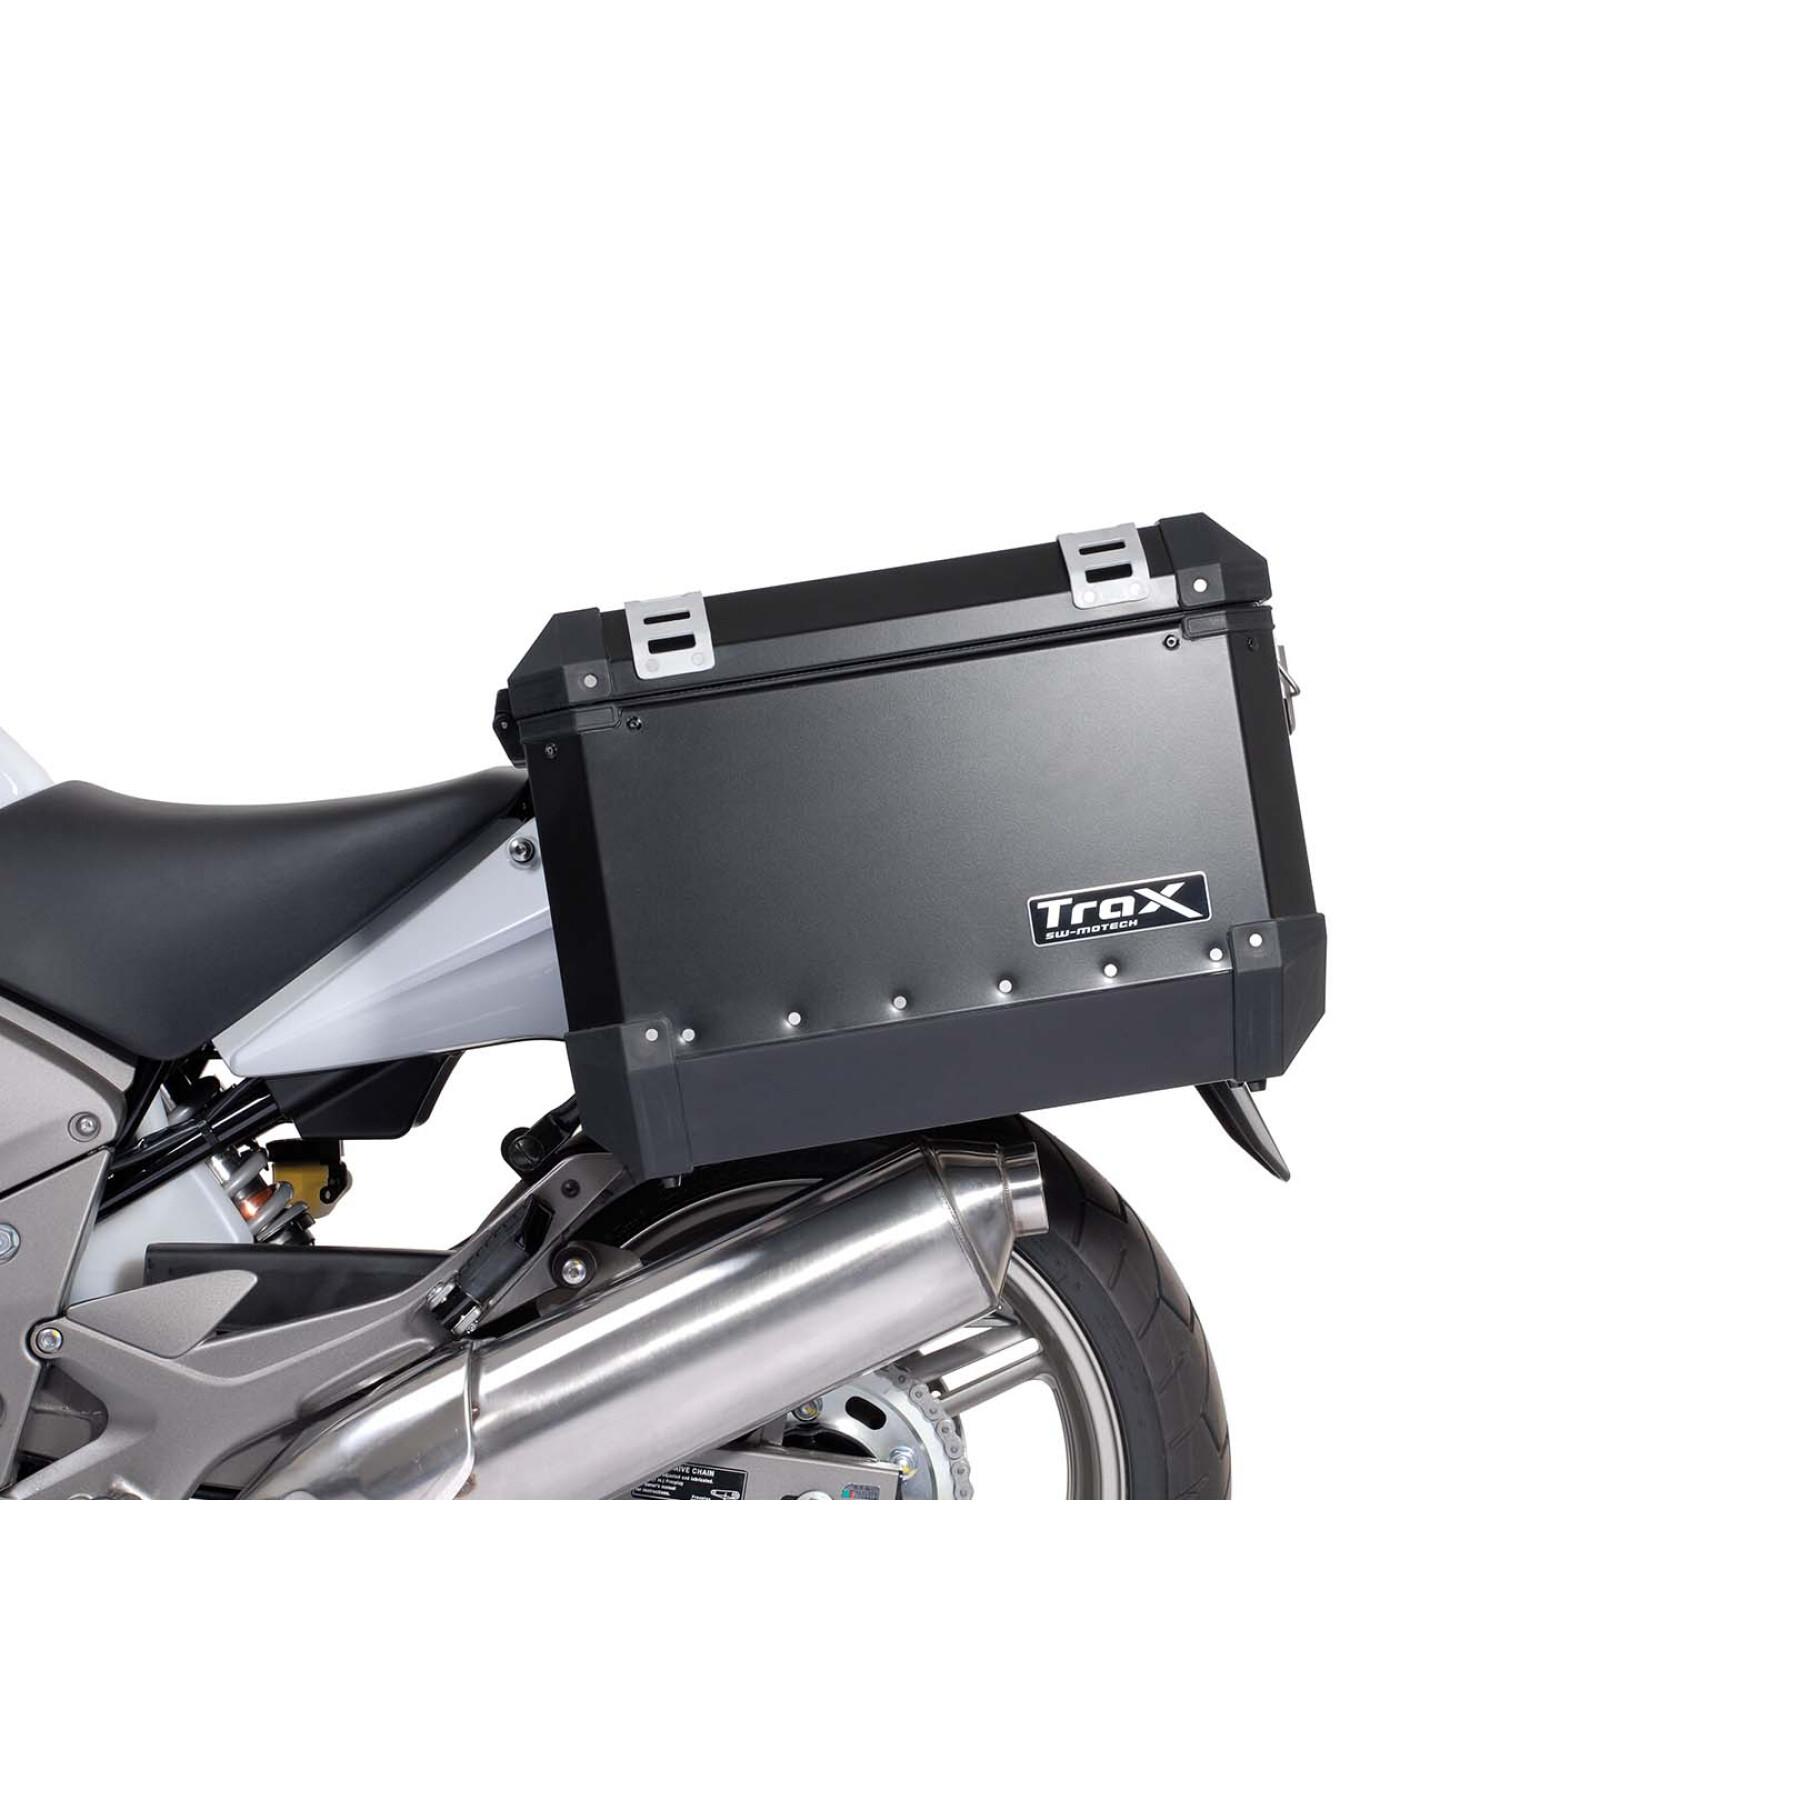 Support valises latérales moto Sw-Motech Evo. Honda Cbf 600